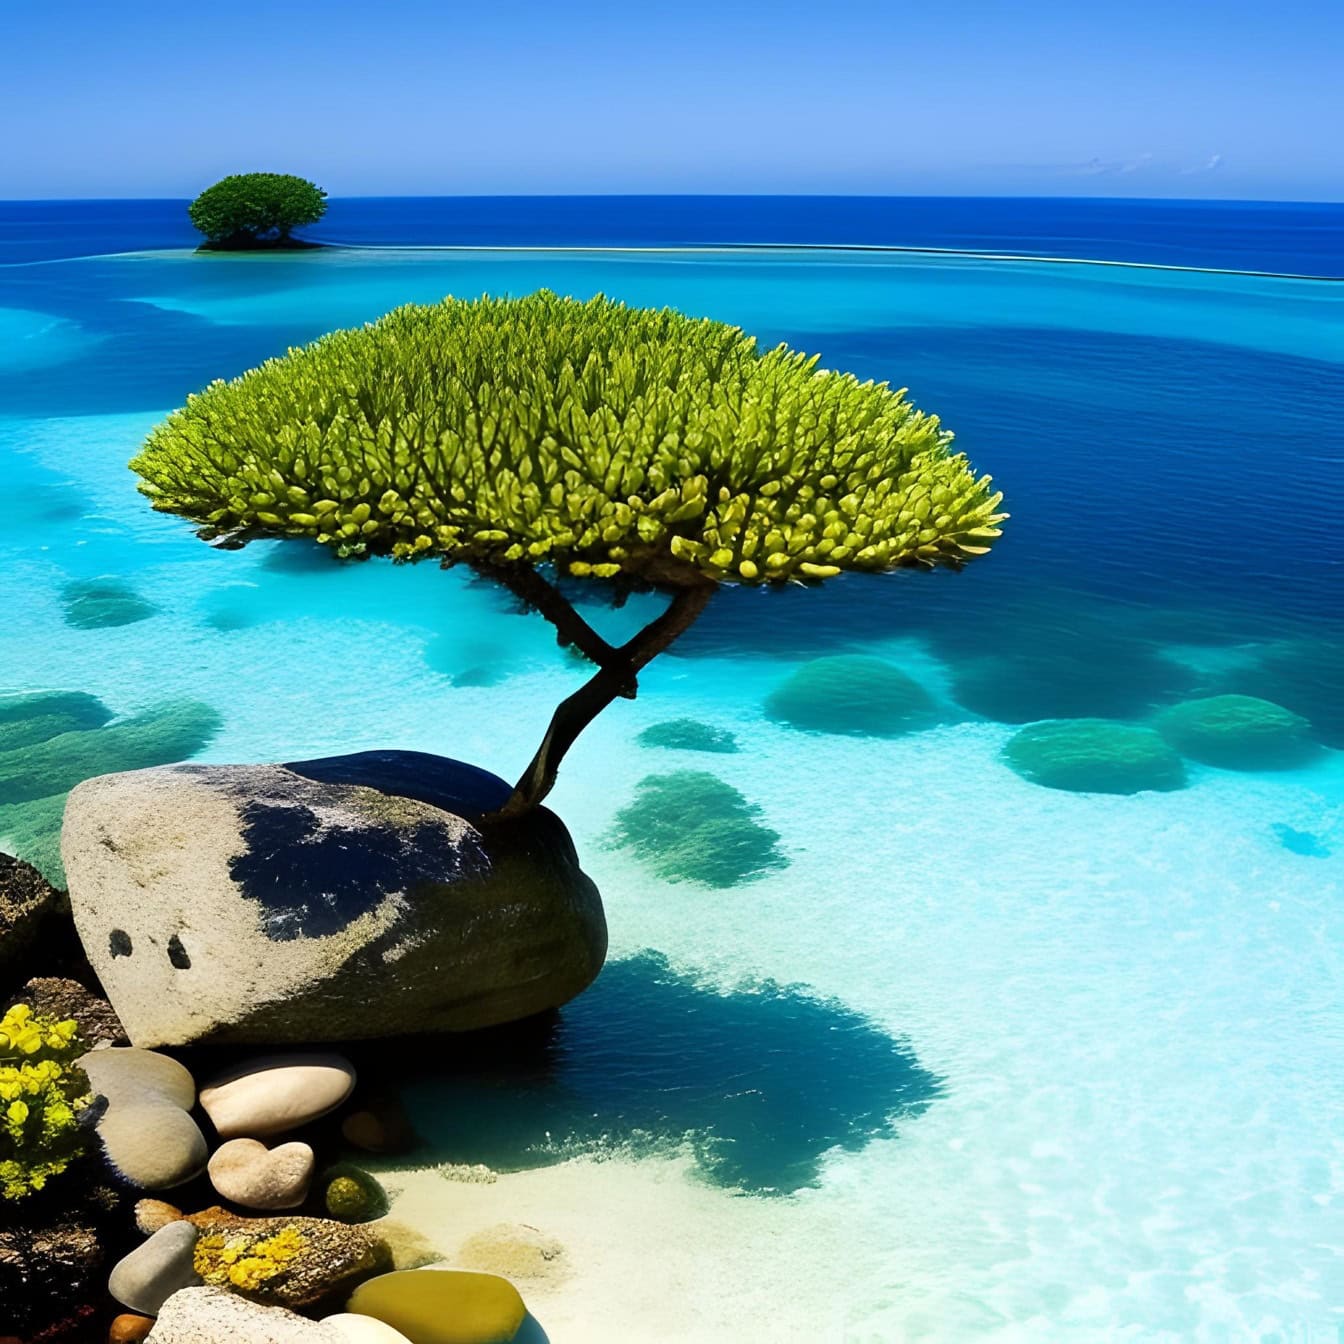 Đồ họa một cái cây mọc trên một tảng đá trên bờ biển của một hòn đảo nhiệt đới được bao quanh bởi nước biển trong suốt